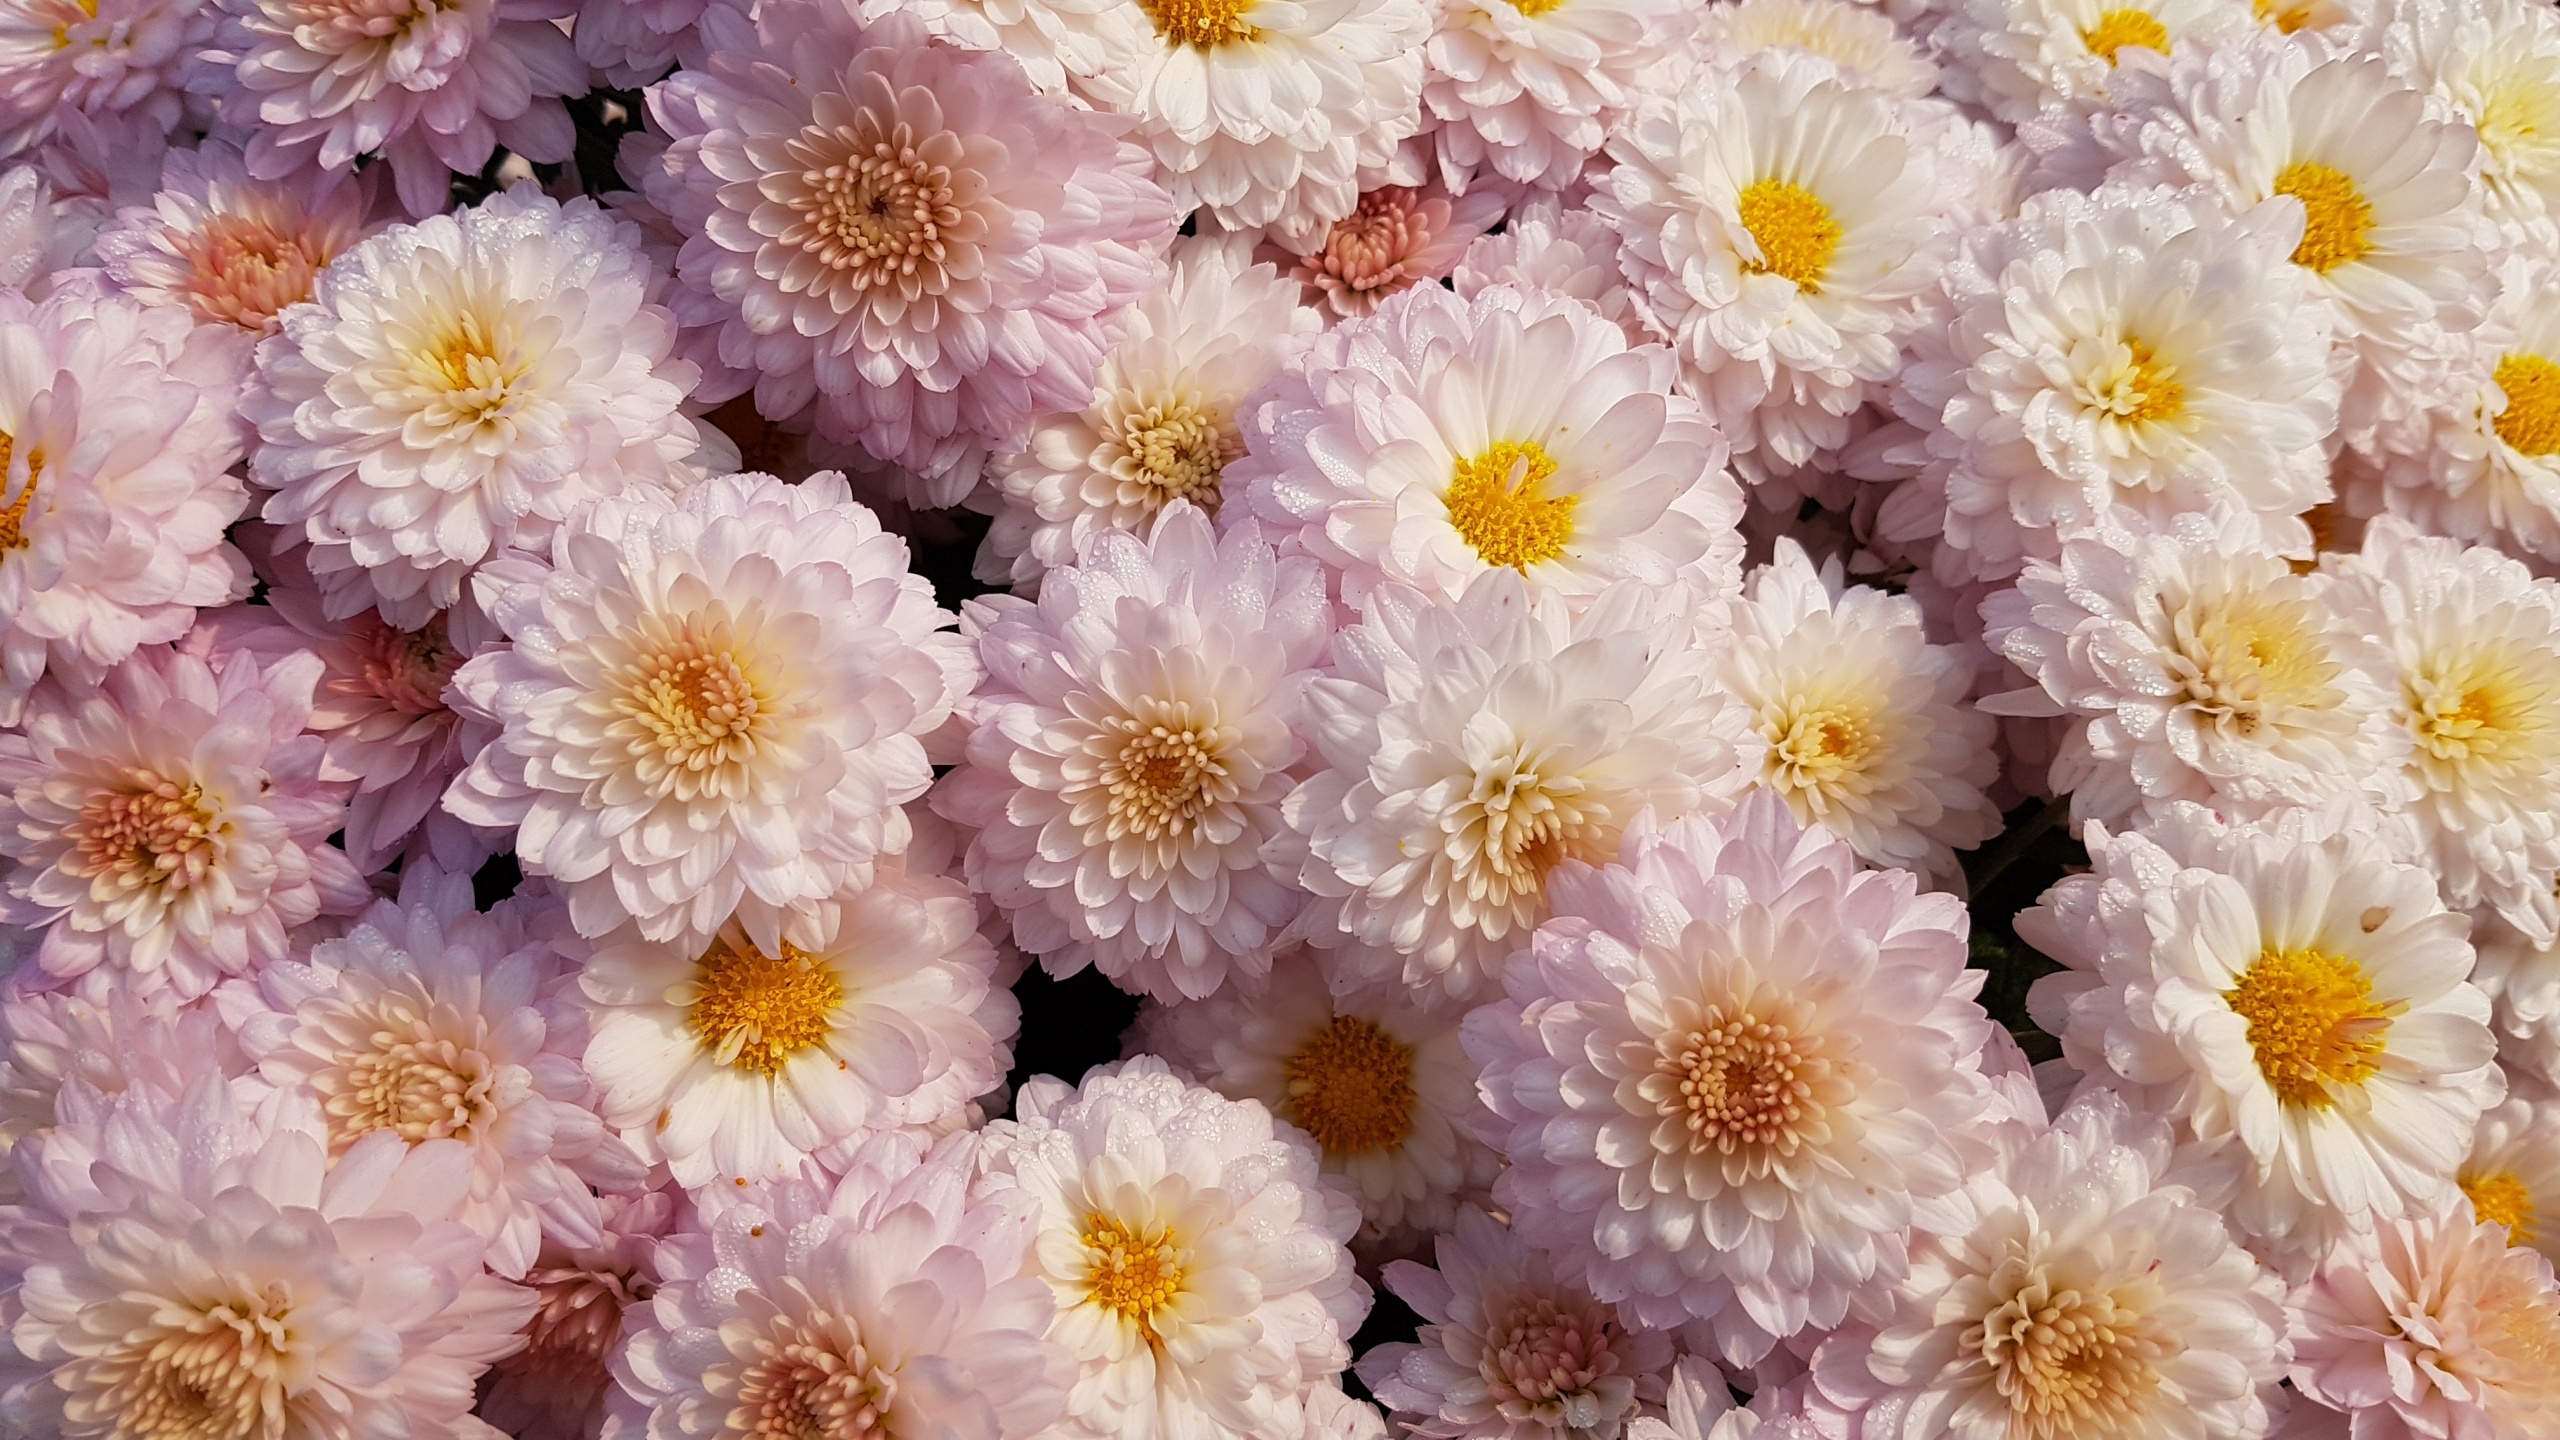 菊花, 显花植物, 粉红色, 花卉设计, Aster 壁纸 2560x1440 允许